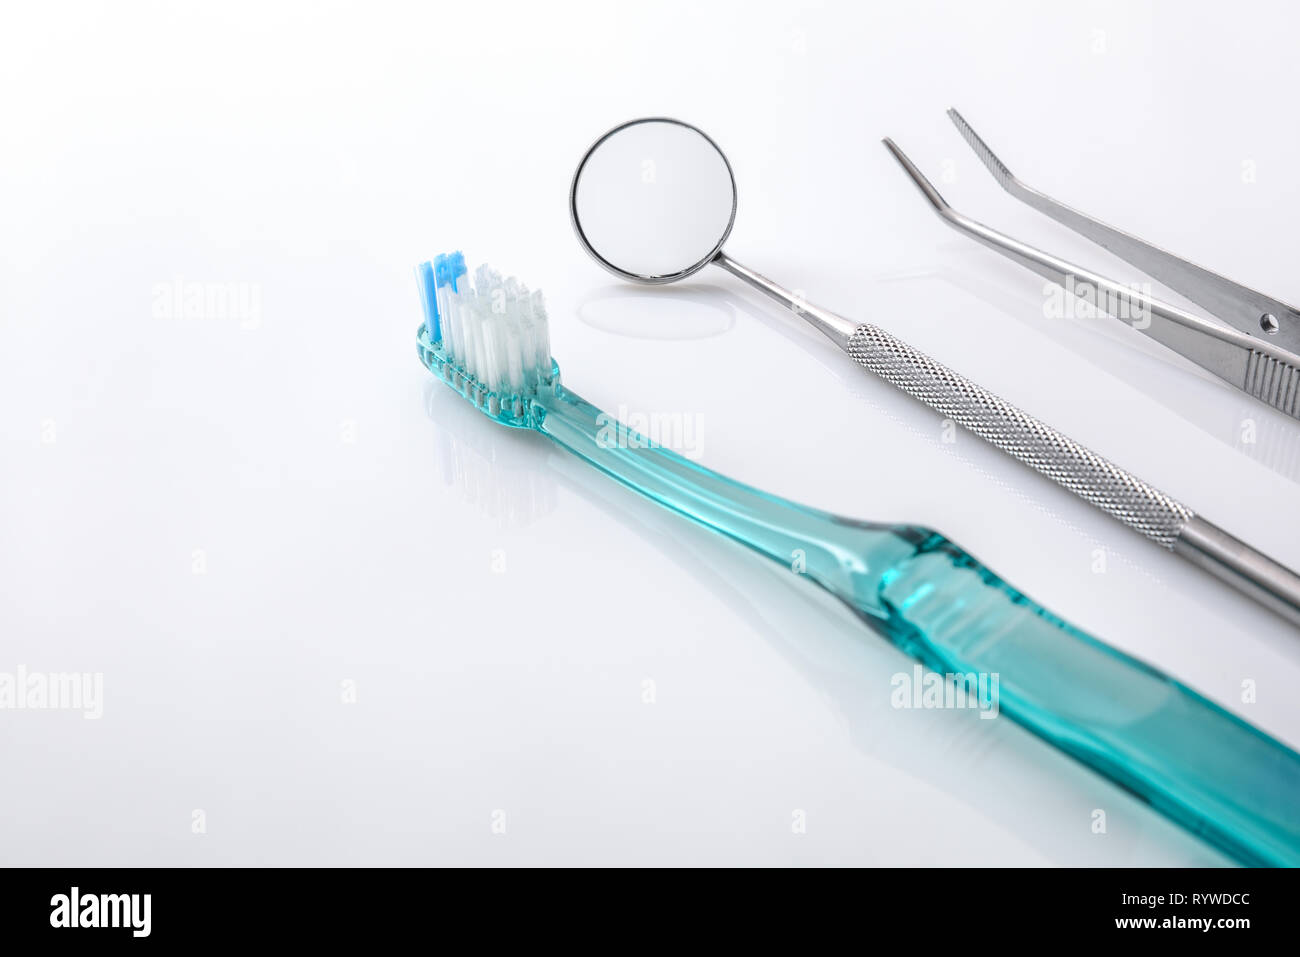 Dentiste blanc table avec outils et le nettoyage des dents concept. Composition horizontale. Elevated view Banque D'Images